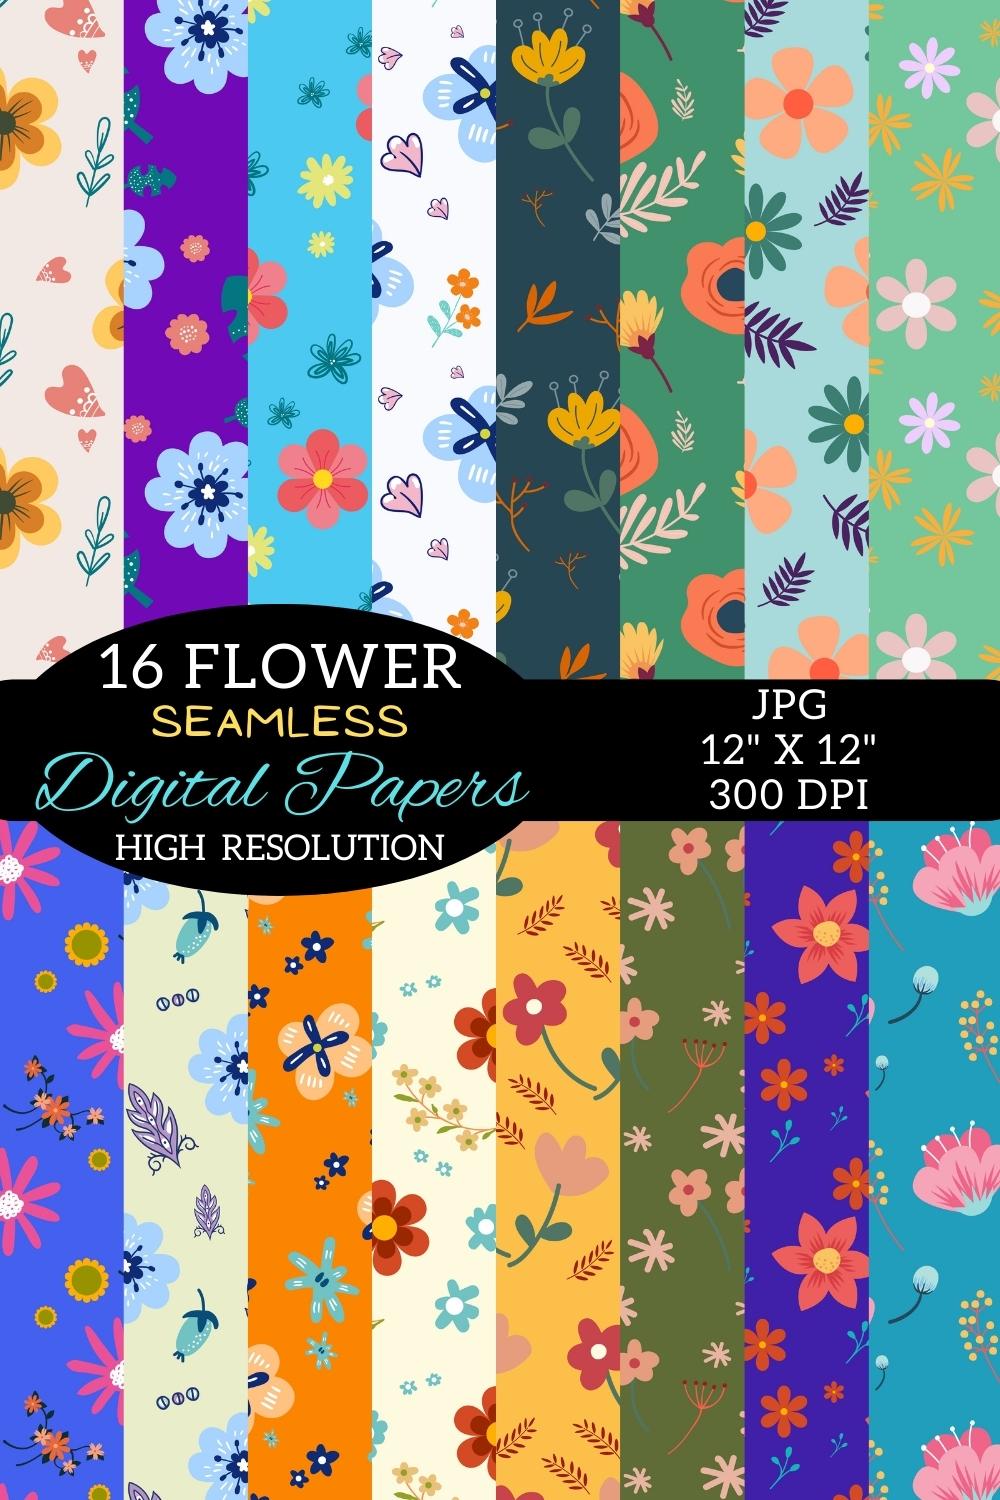 Flower Digital Paper Patterns Design pinterest image.